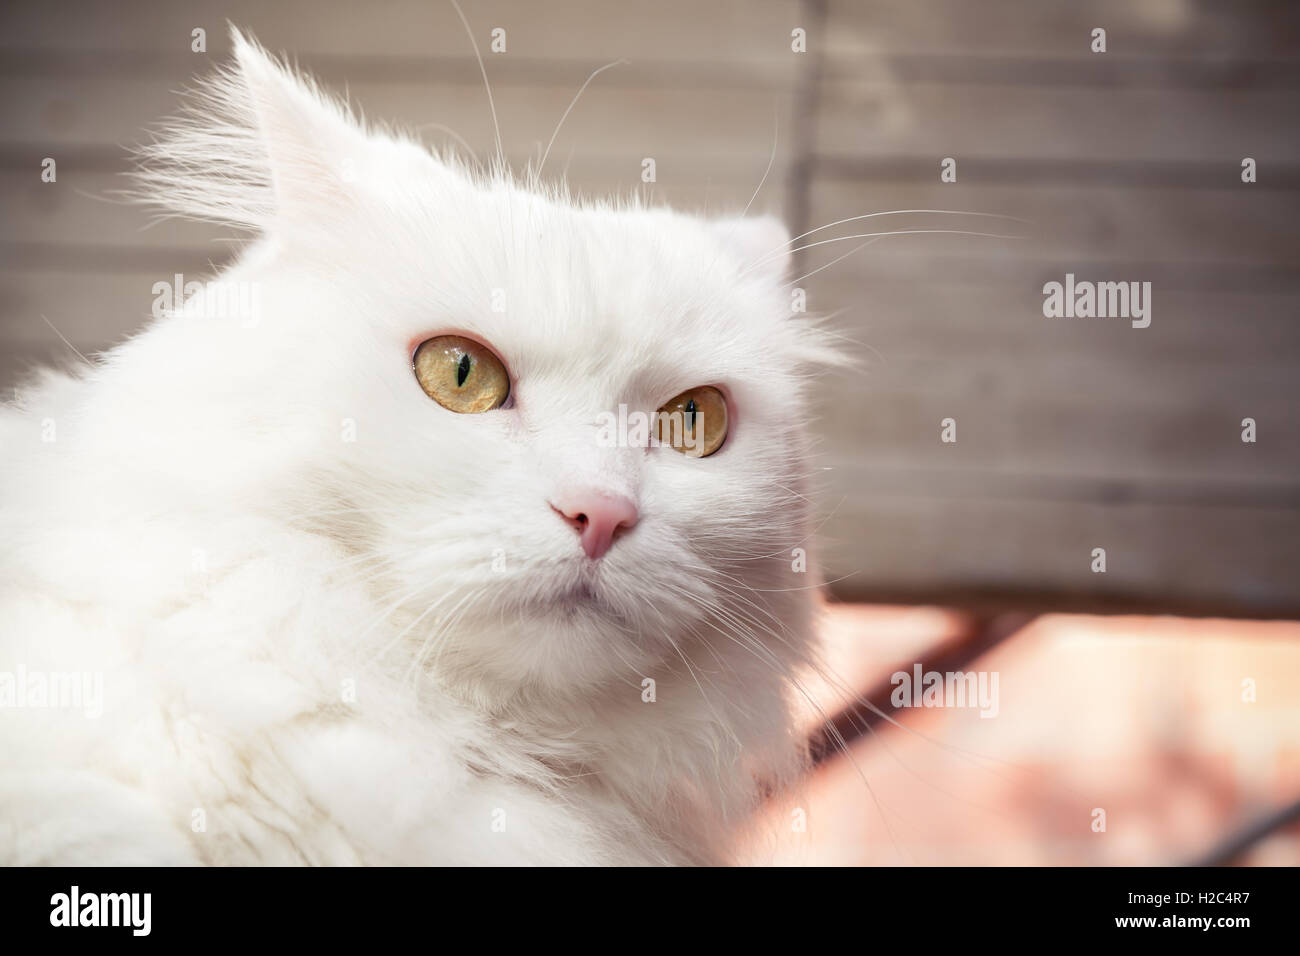 Closeup portrait of white fluffy cat avec des yeux jaunes Banque D'Images